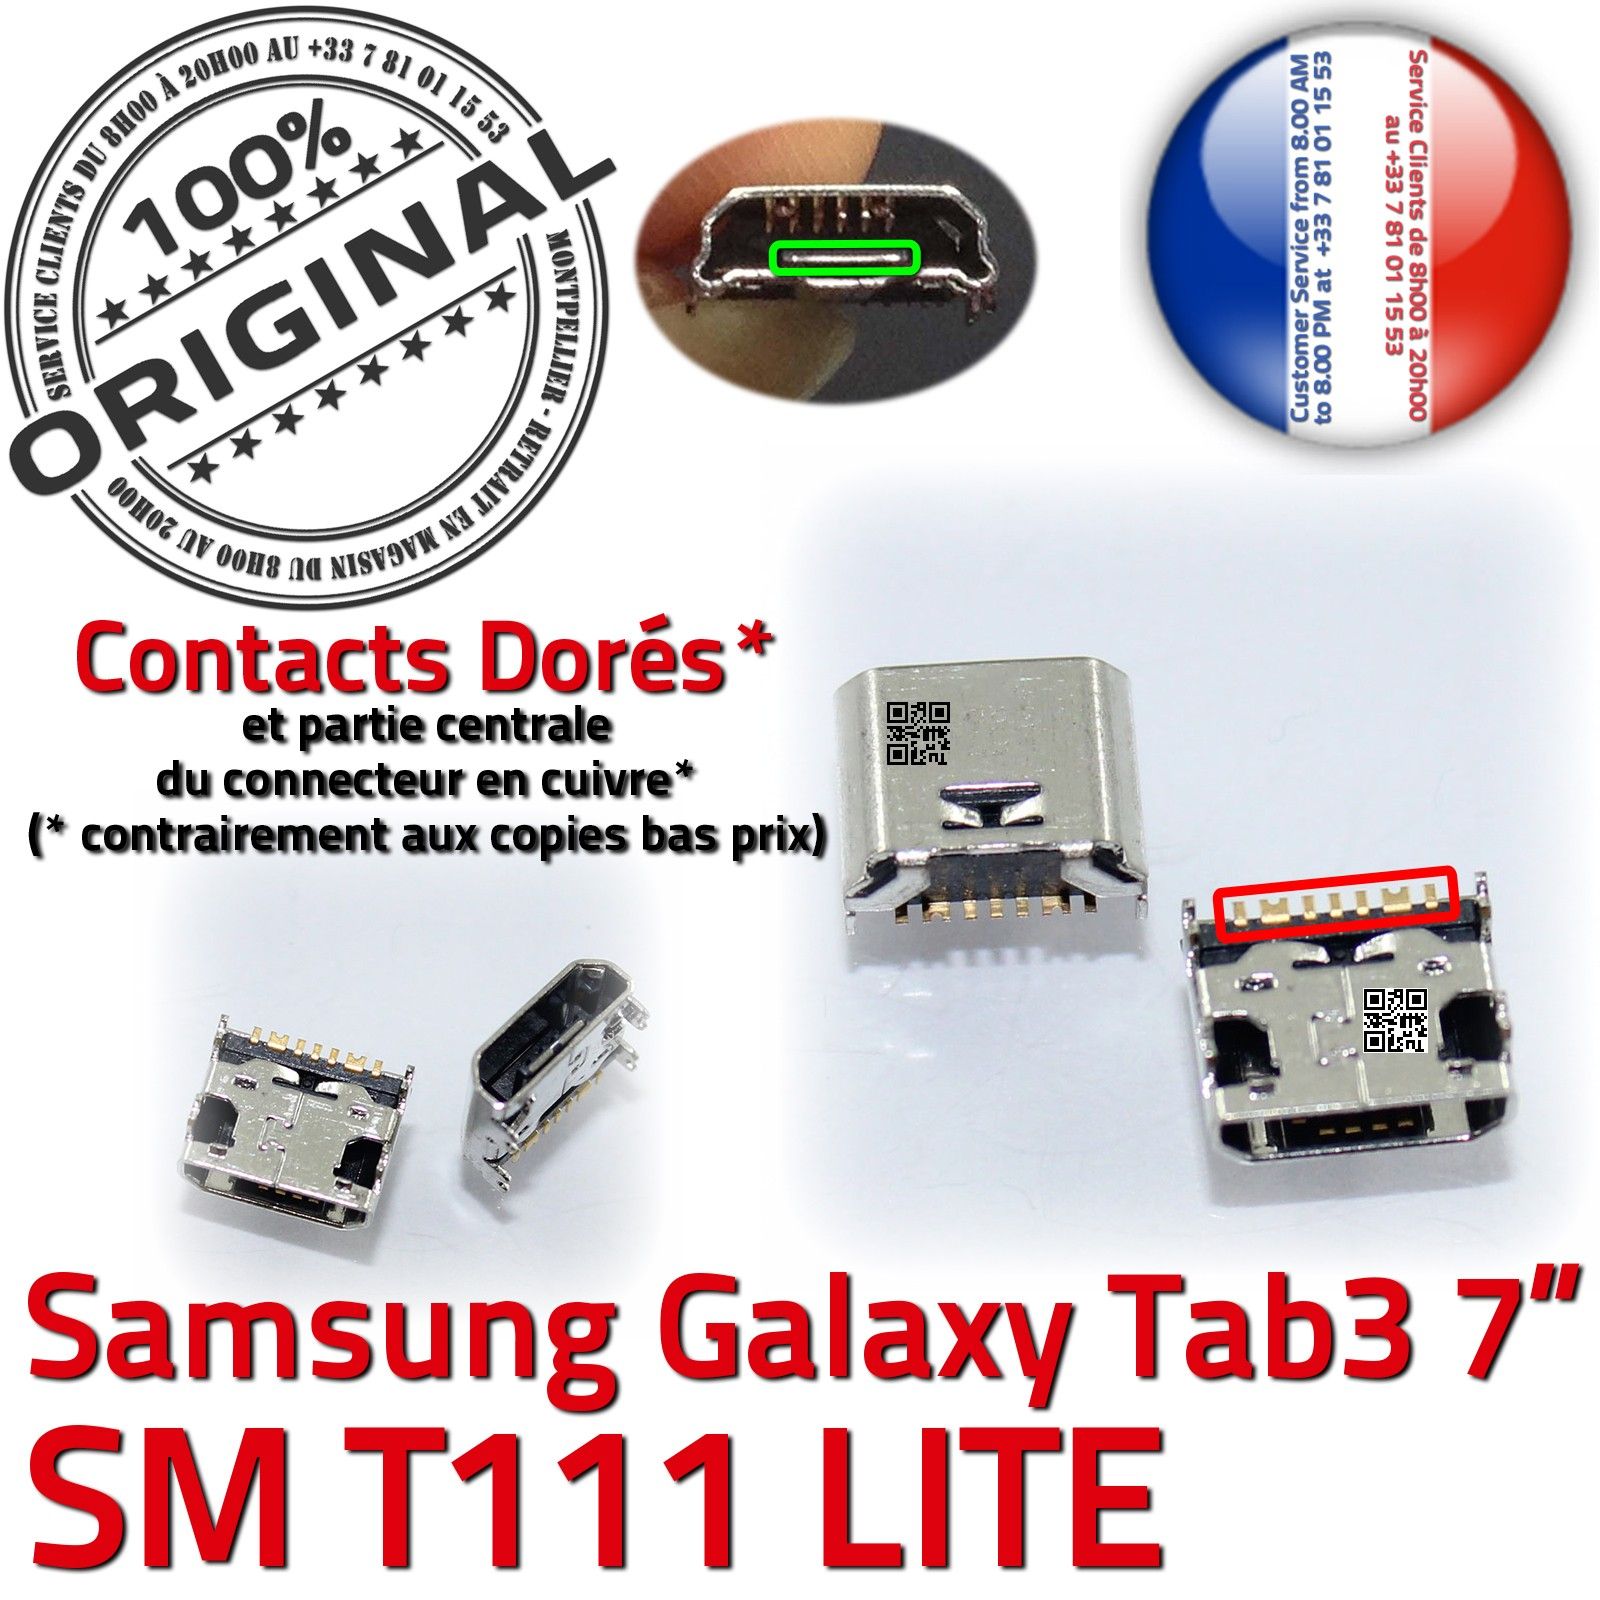 ORIGINAL Samsung Galaxy TAB 3 SM T111 Connecteur de charge à souder Micro  USB Pins Dorés Dock Prise Connector Chargeur 7 inch